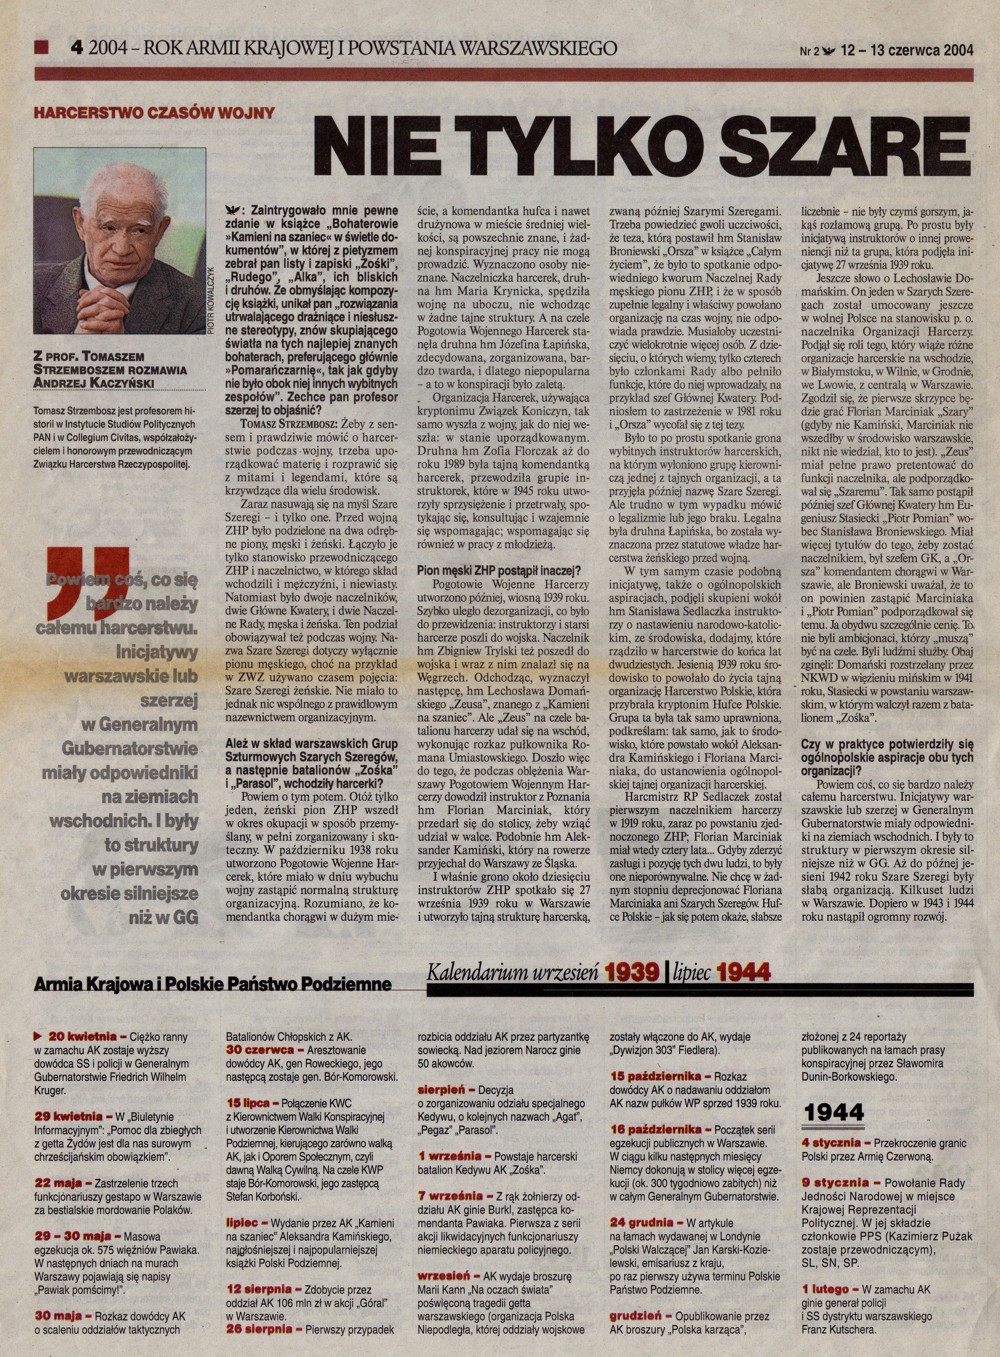 Rzeczpospolita 01.08.2004 cz.1